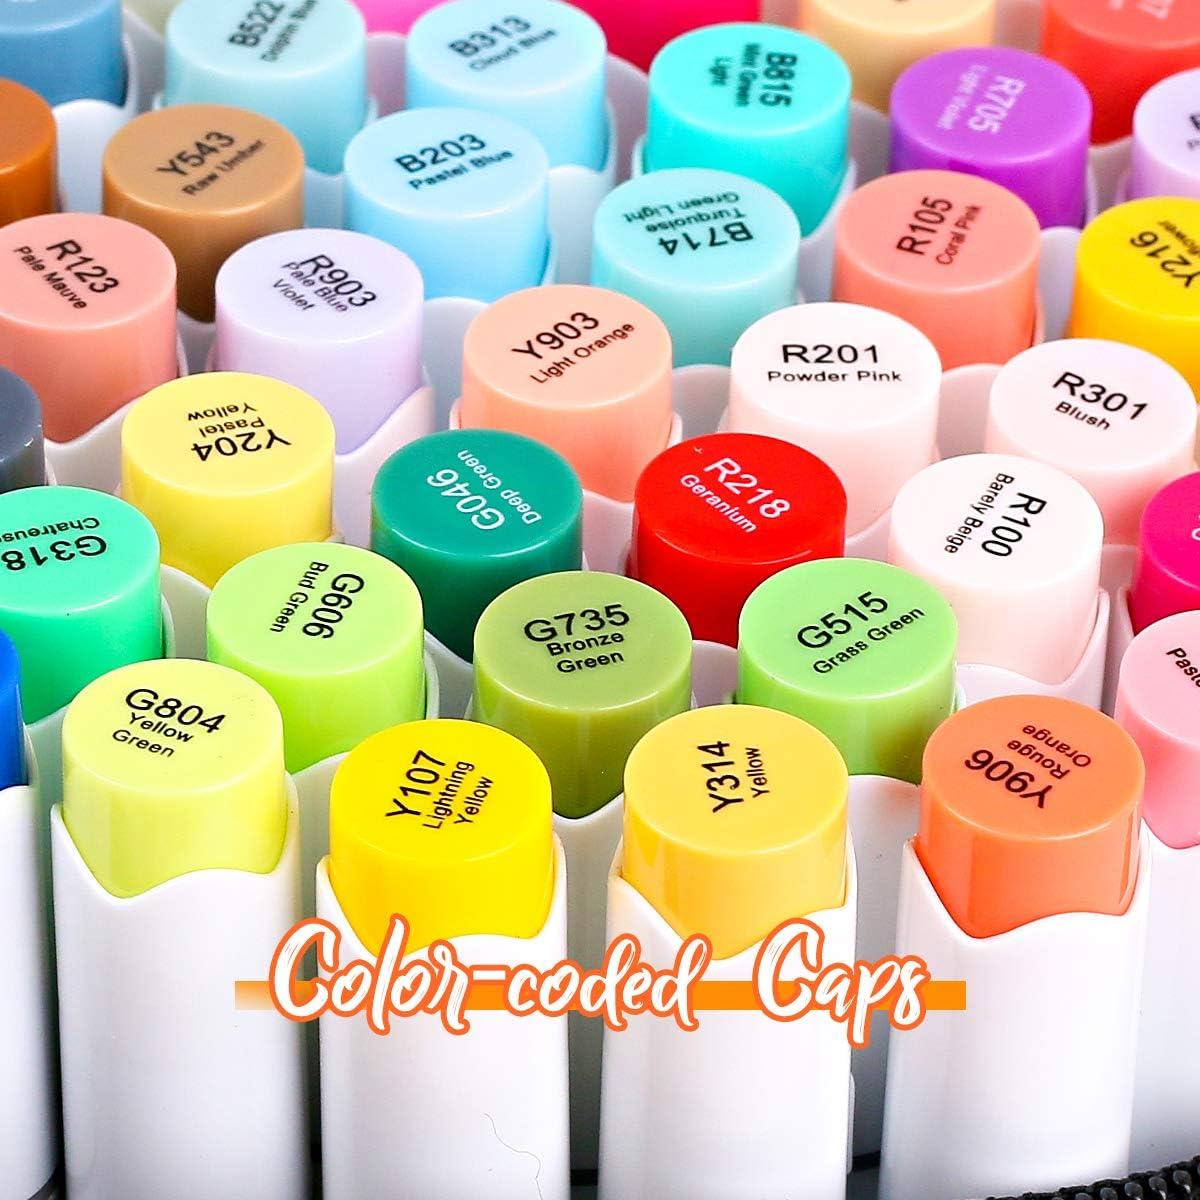 Ohuhu 72-Color Art Markers Set, Brush & Chisel Tip for Kids, with 1 Blender